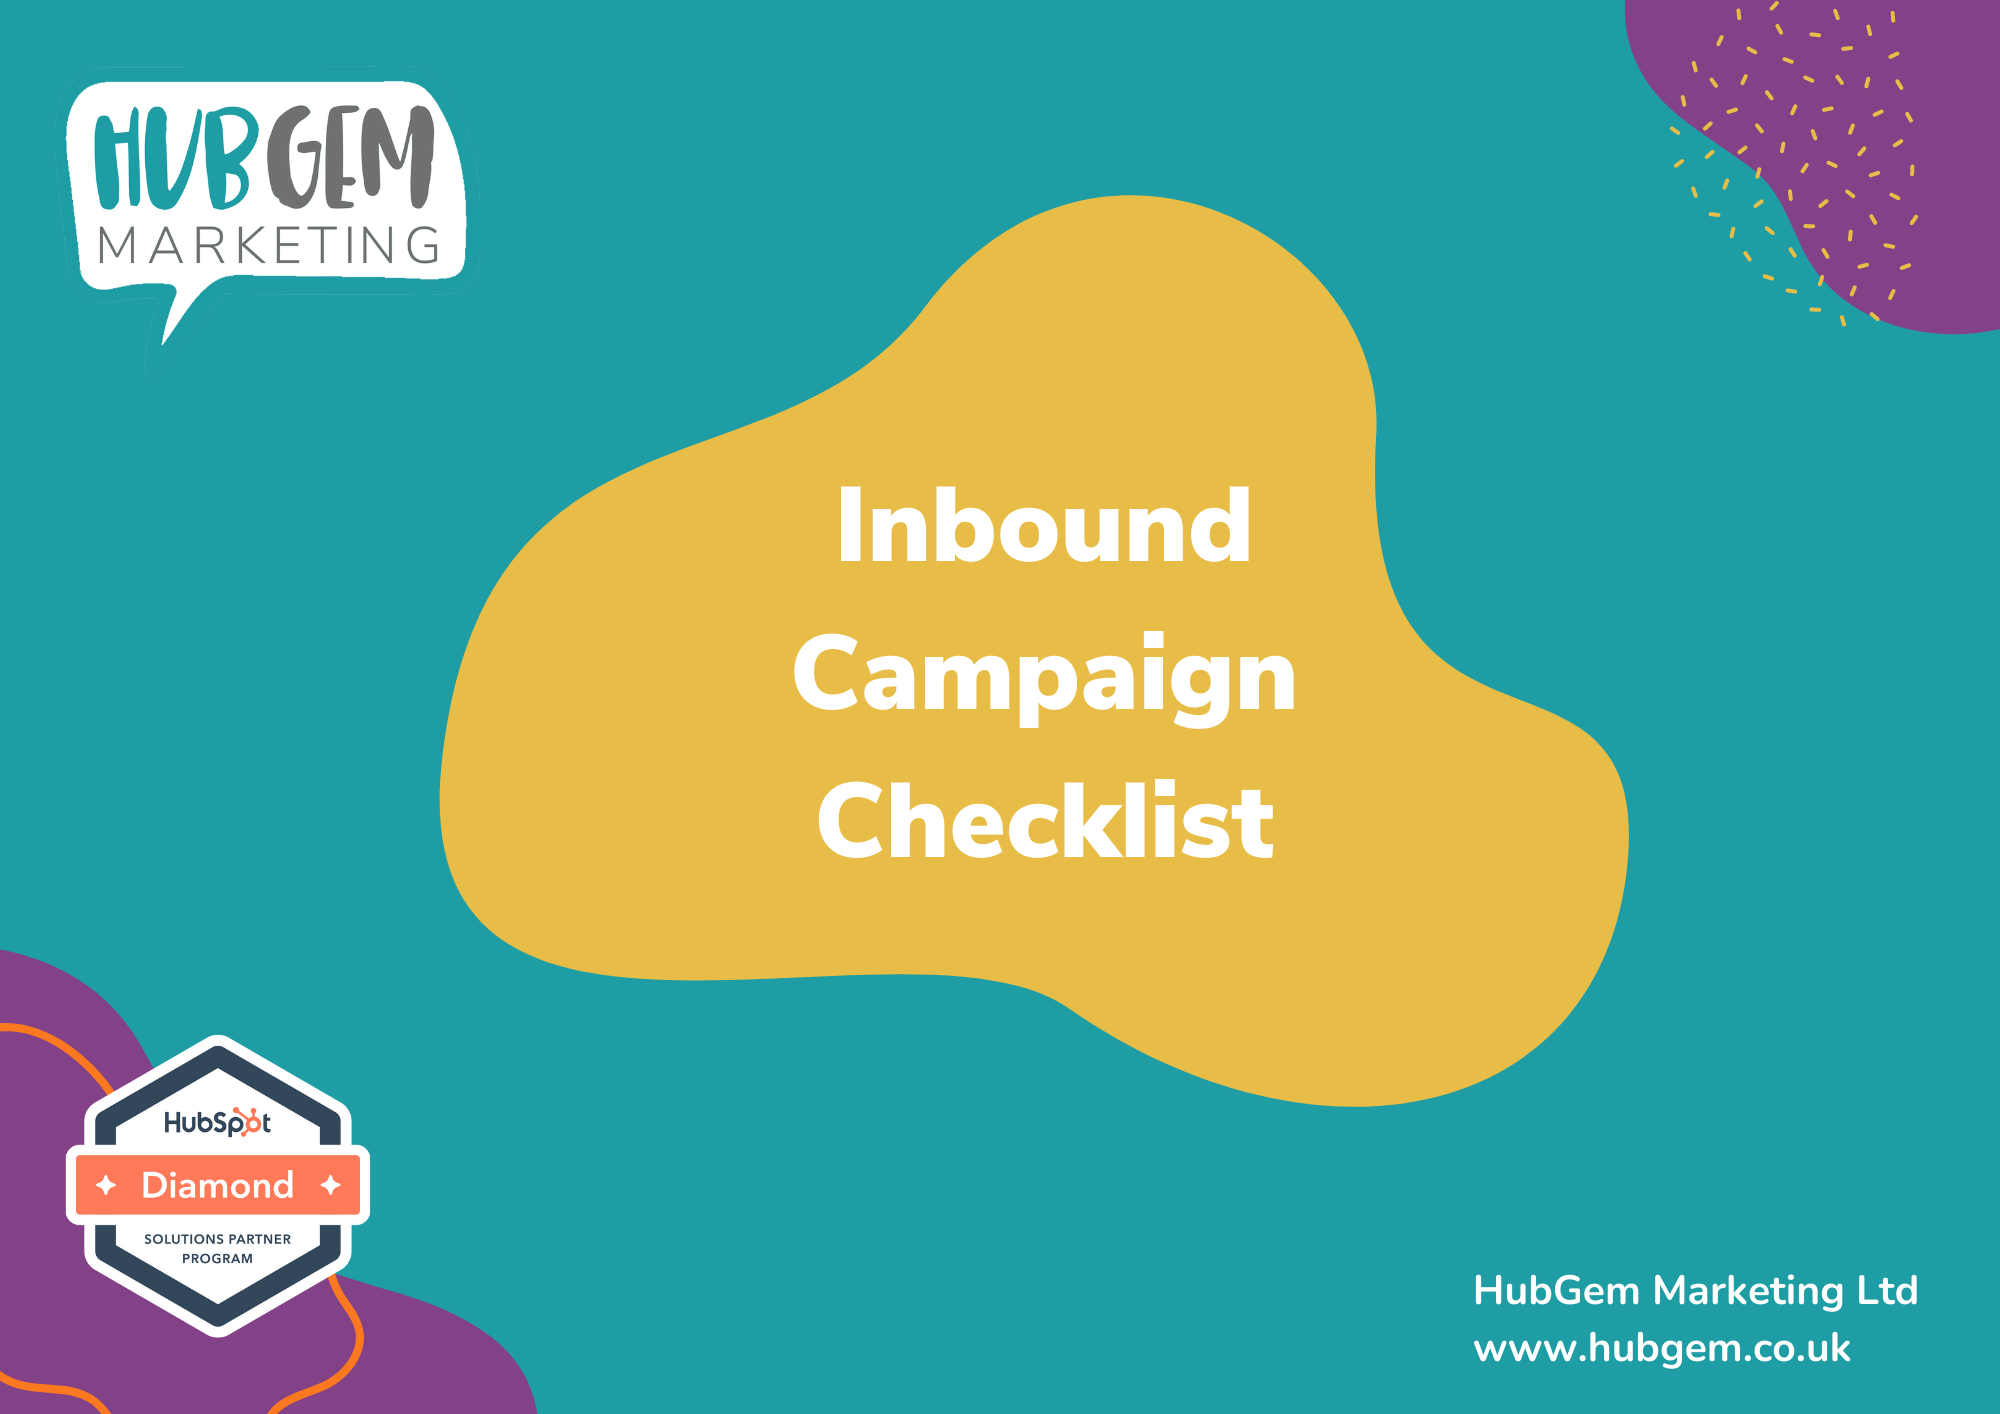 NEW Inbound Campaign Checklist